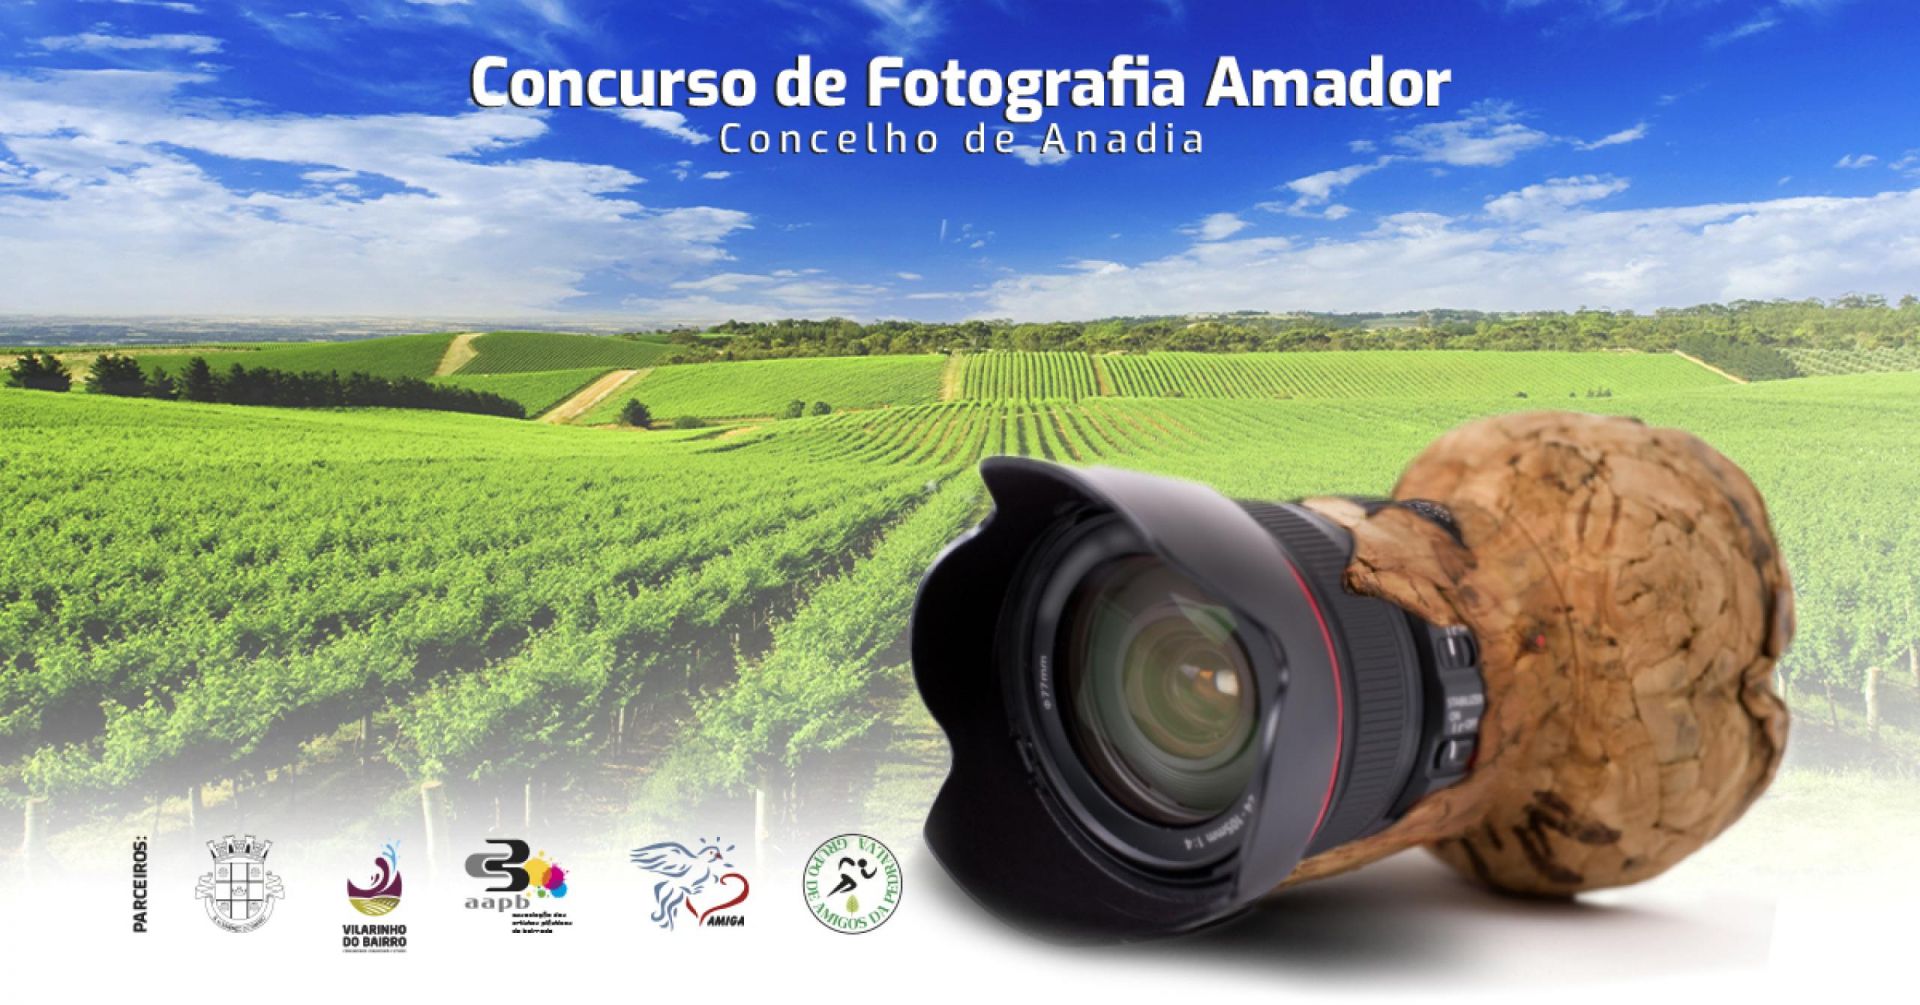 Concurso de Fotografia Amador